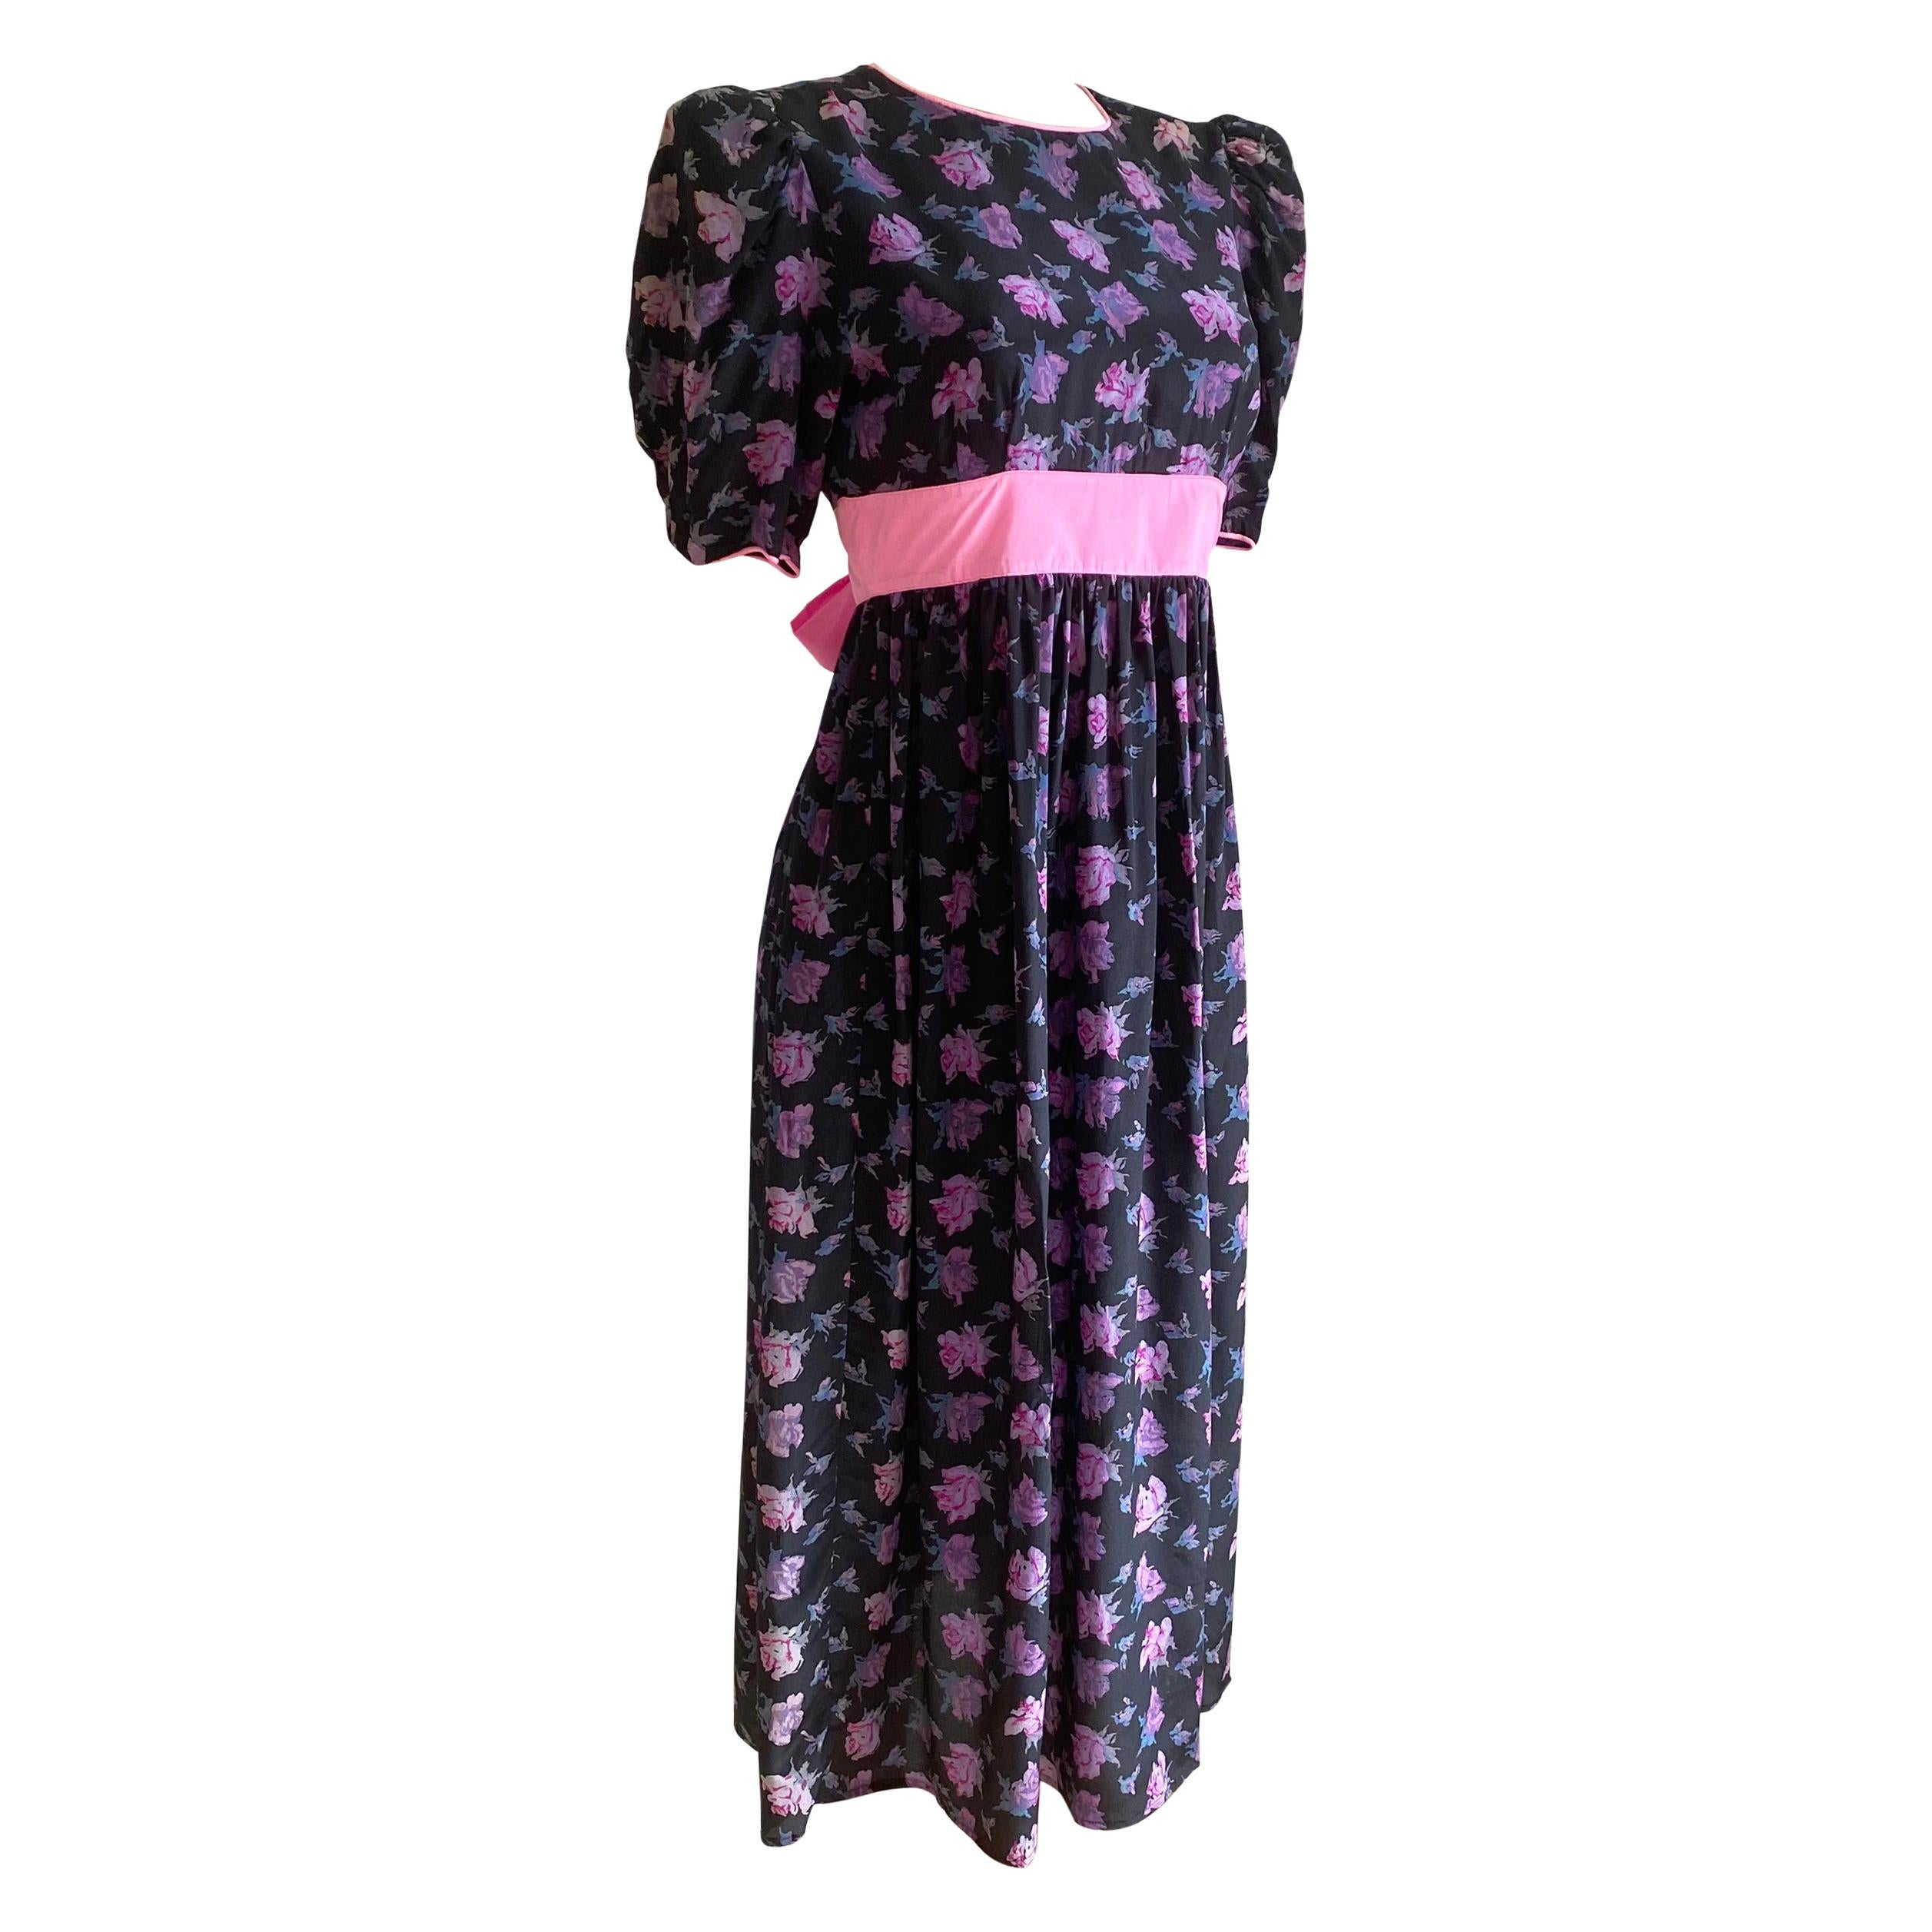 Pre-washed rosebud print black silk crepe FLORA KUNG princess dress For Sale